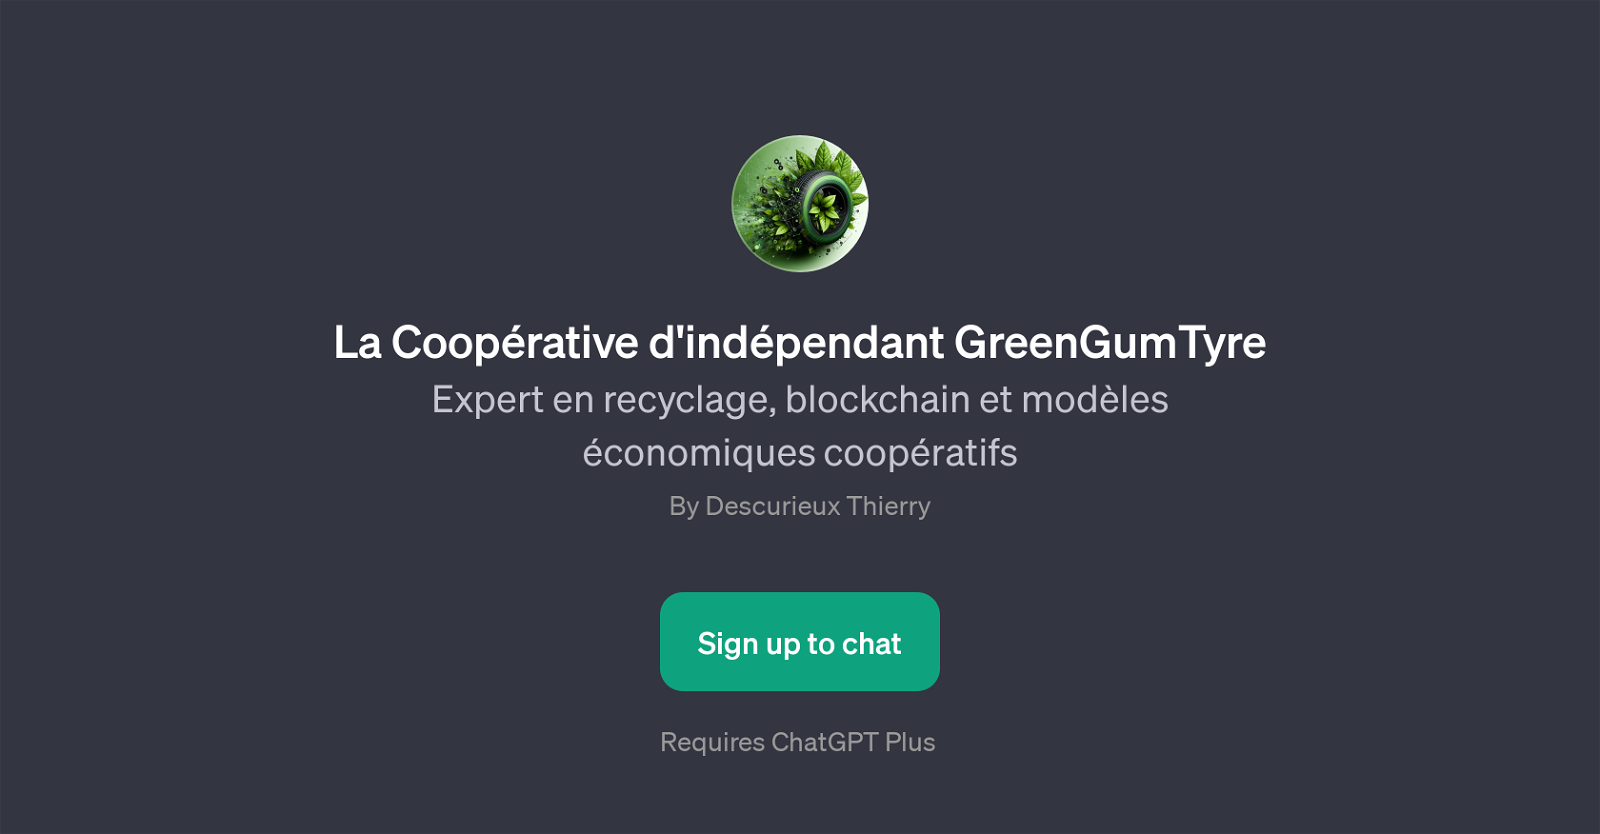 La Cooprative d'indpendant GreenGumTyre website